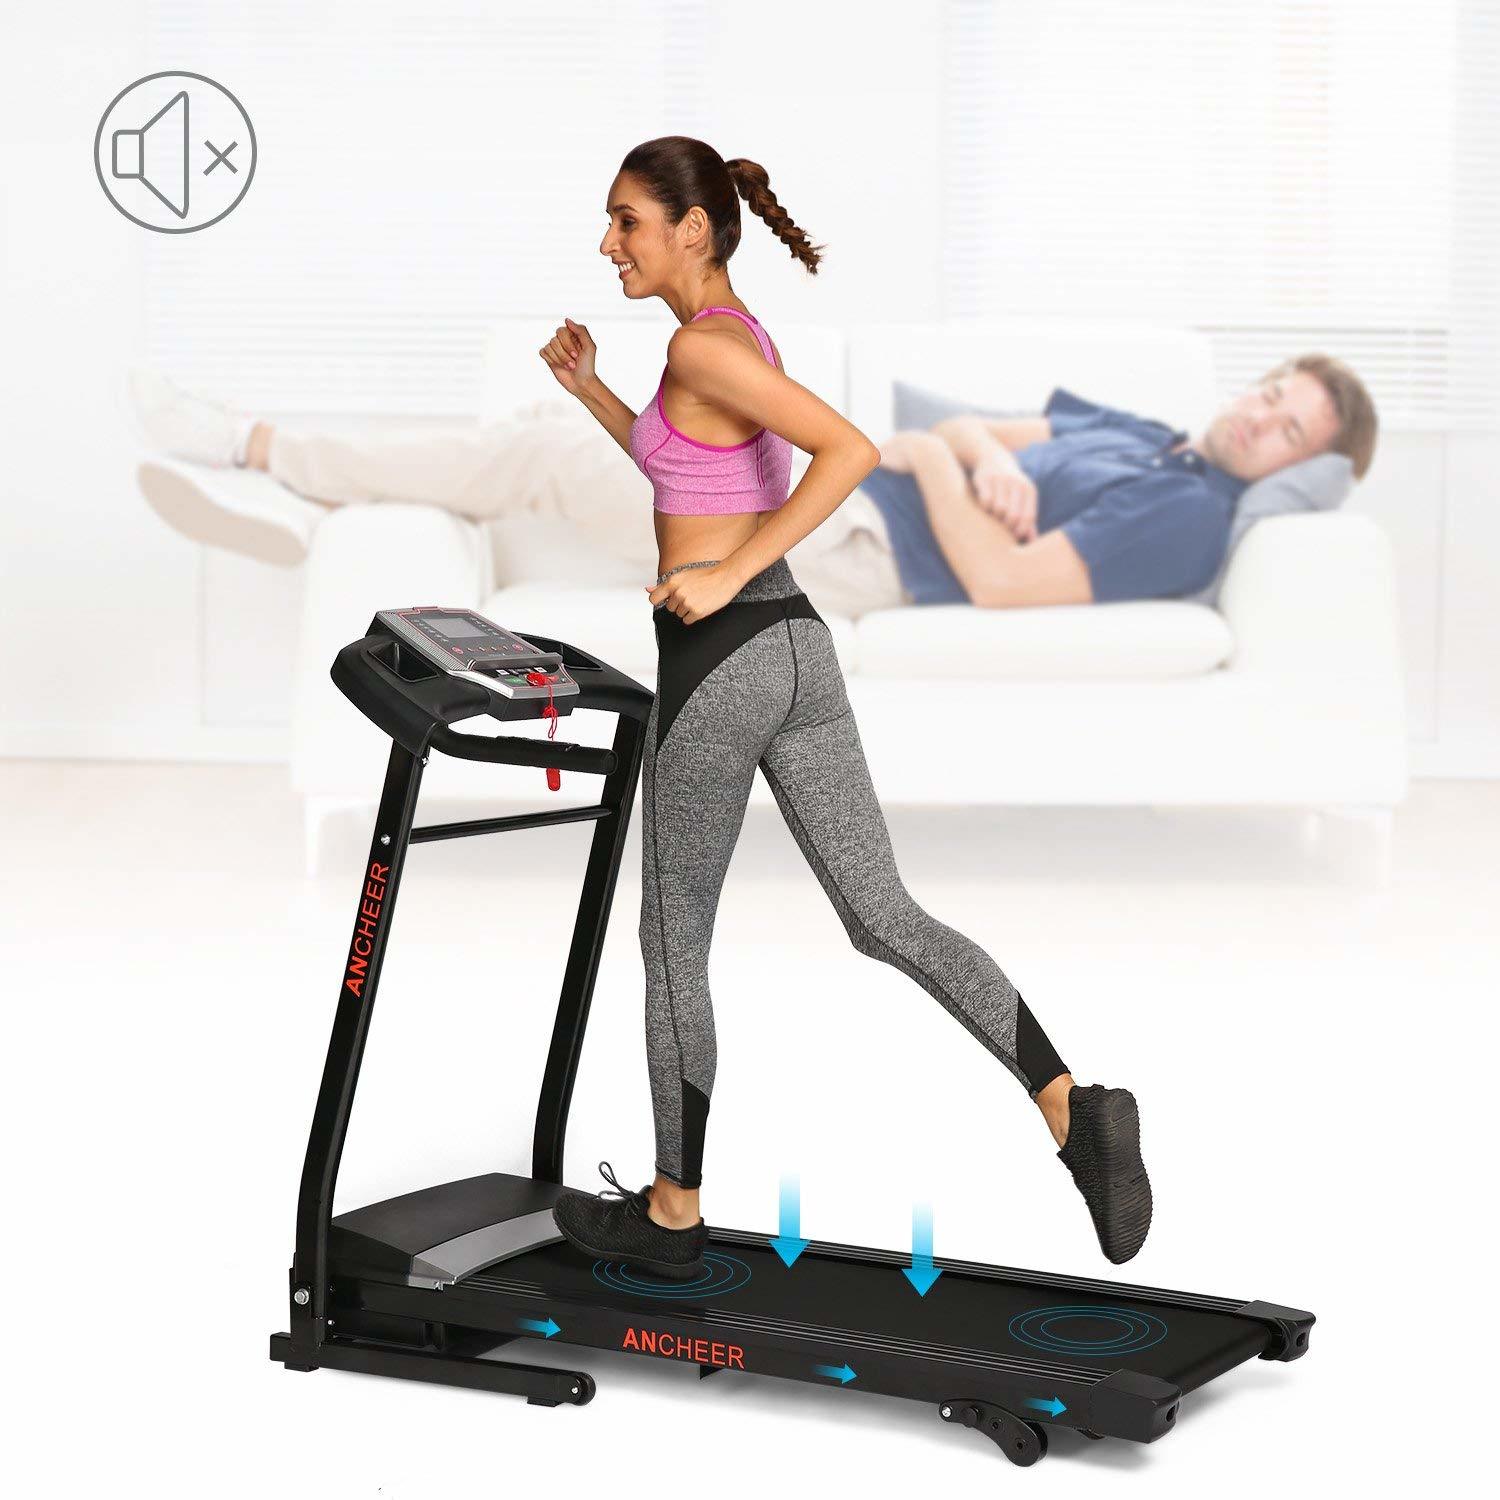 10 best treadmills under $500 & $1000 for home gym 16